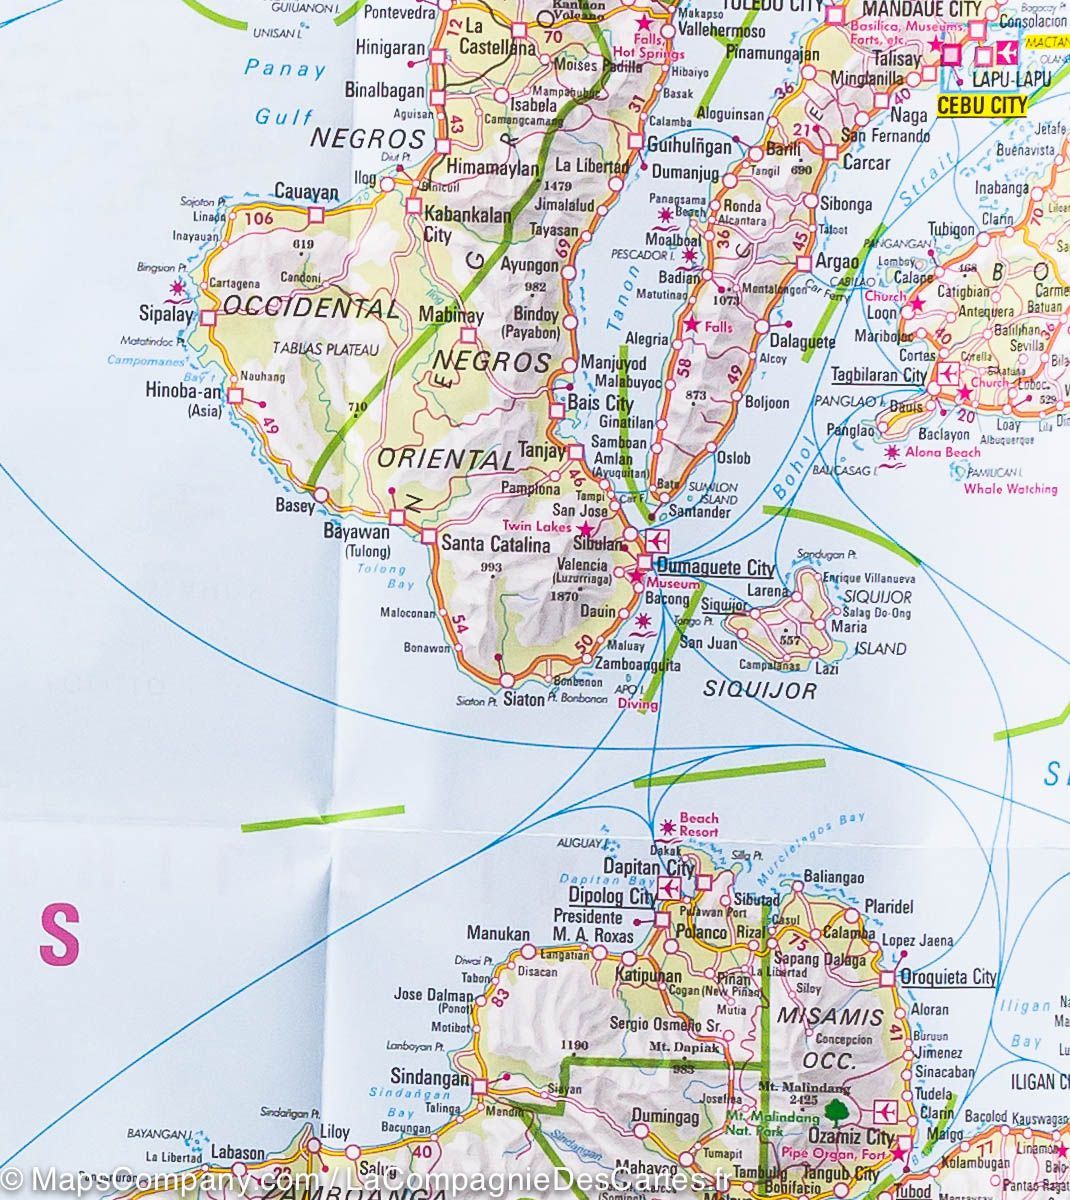 Carte routière imperméable - Philippines & plan de Manille | Nelles Map carte pliée Nelles Verlag 